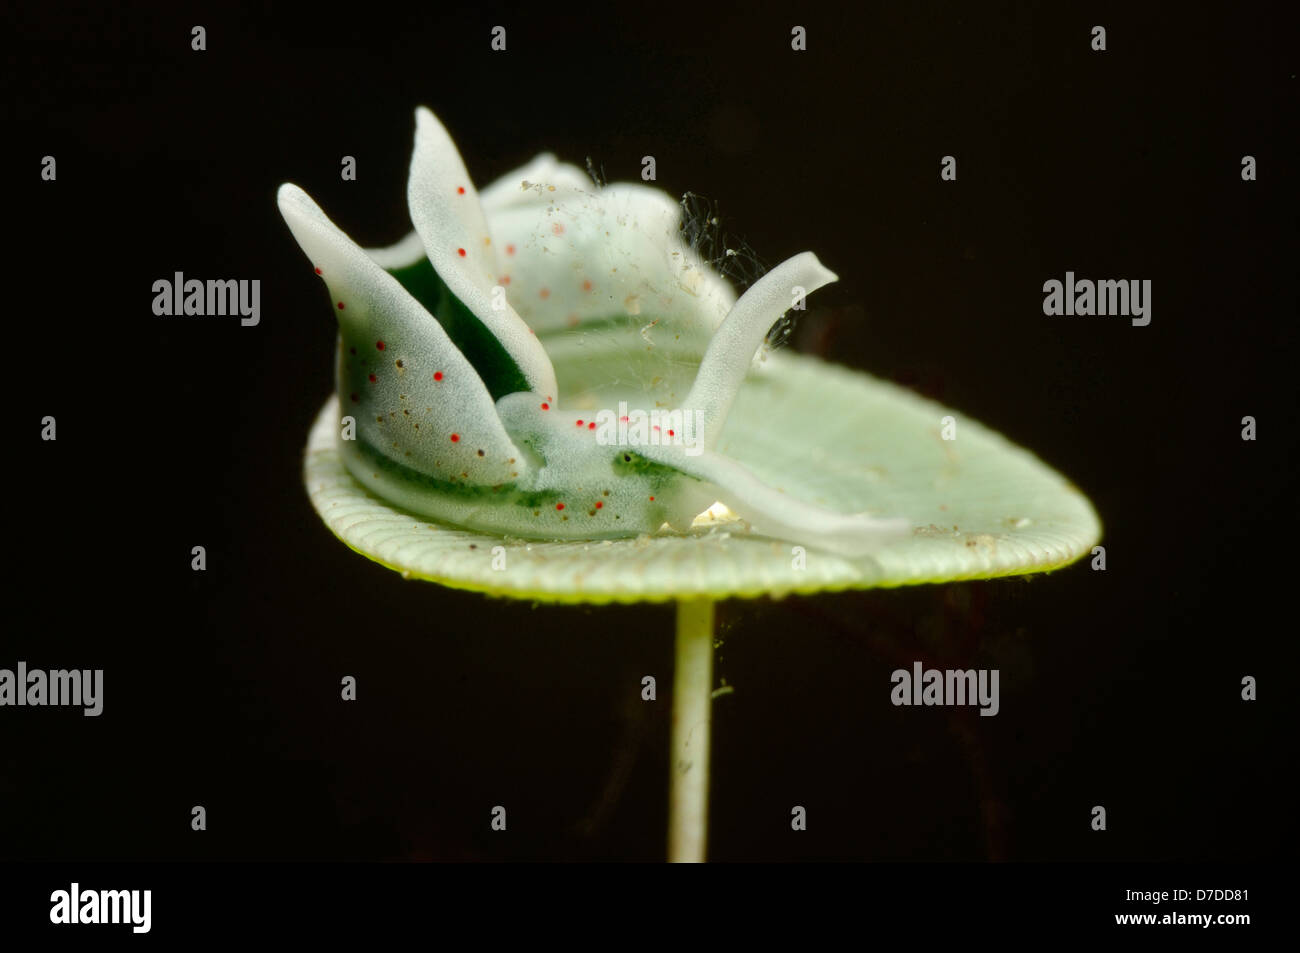 Sea Slug on its Foodplant Mermaids Wine Glass Alga, Elysia viridis, Susac, Adriatic Sea, Croatia Stock Photo